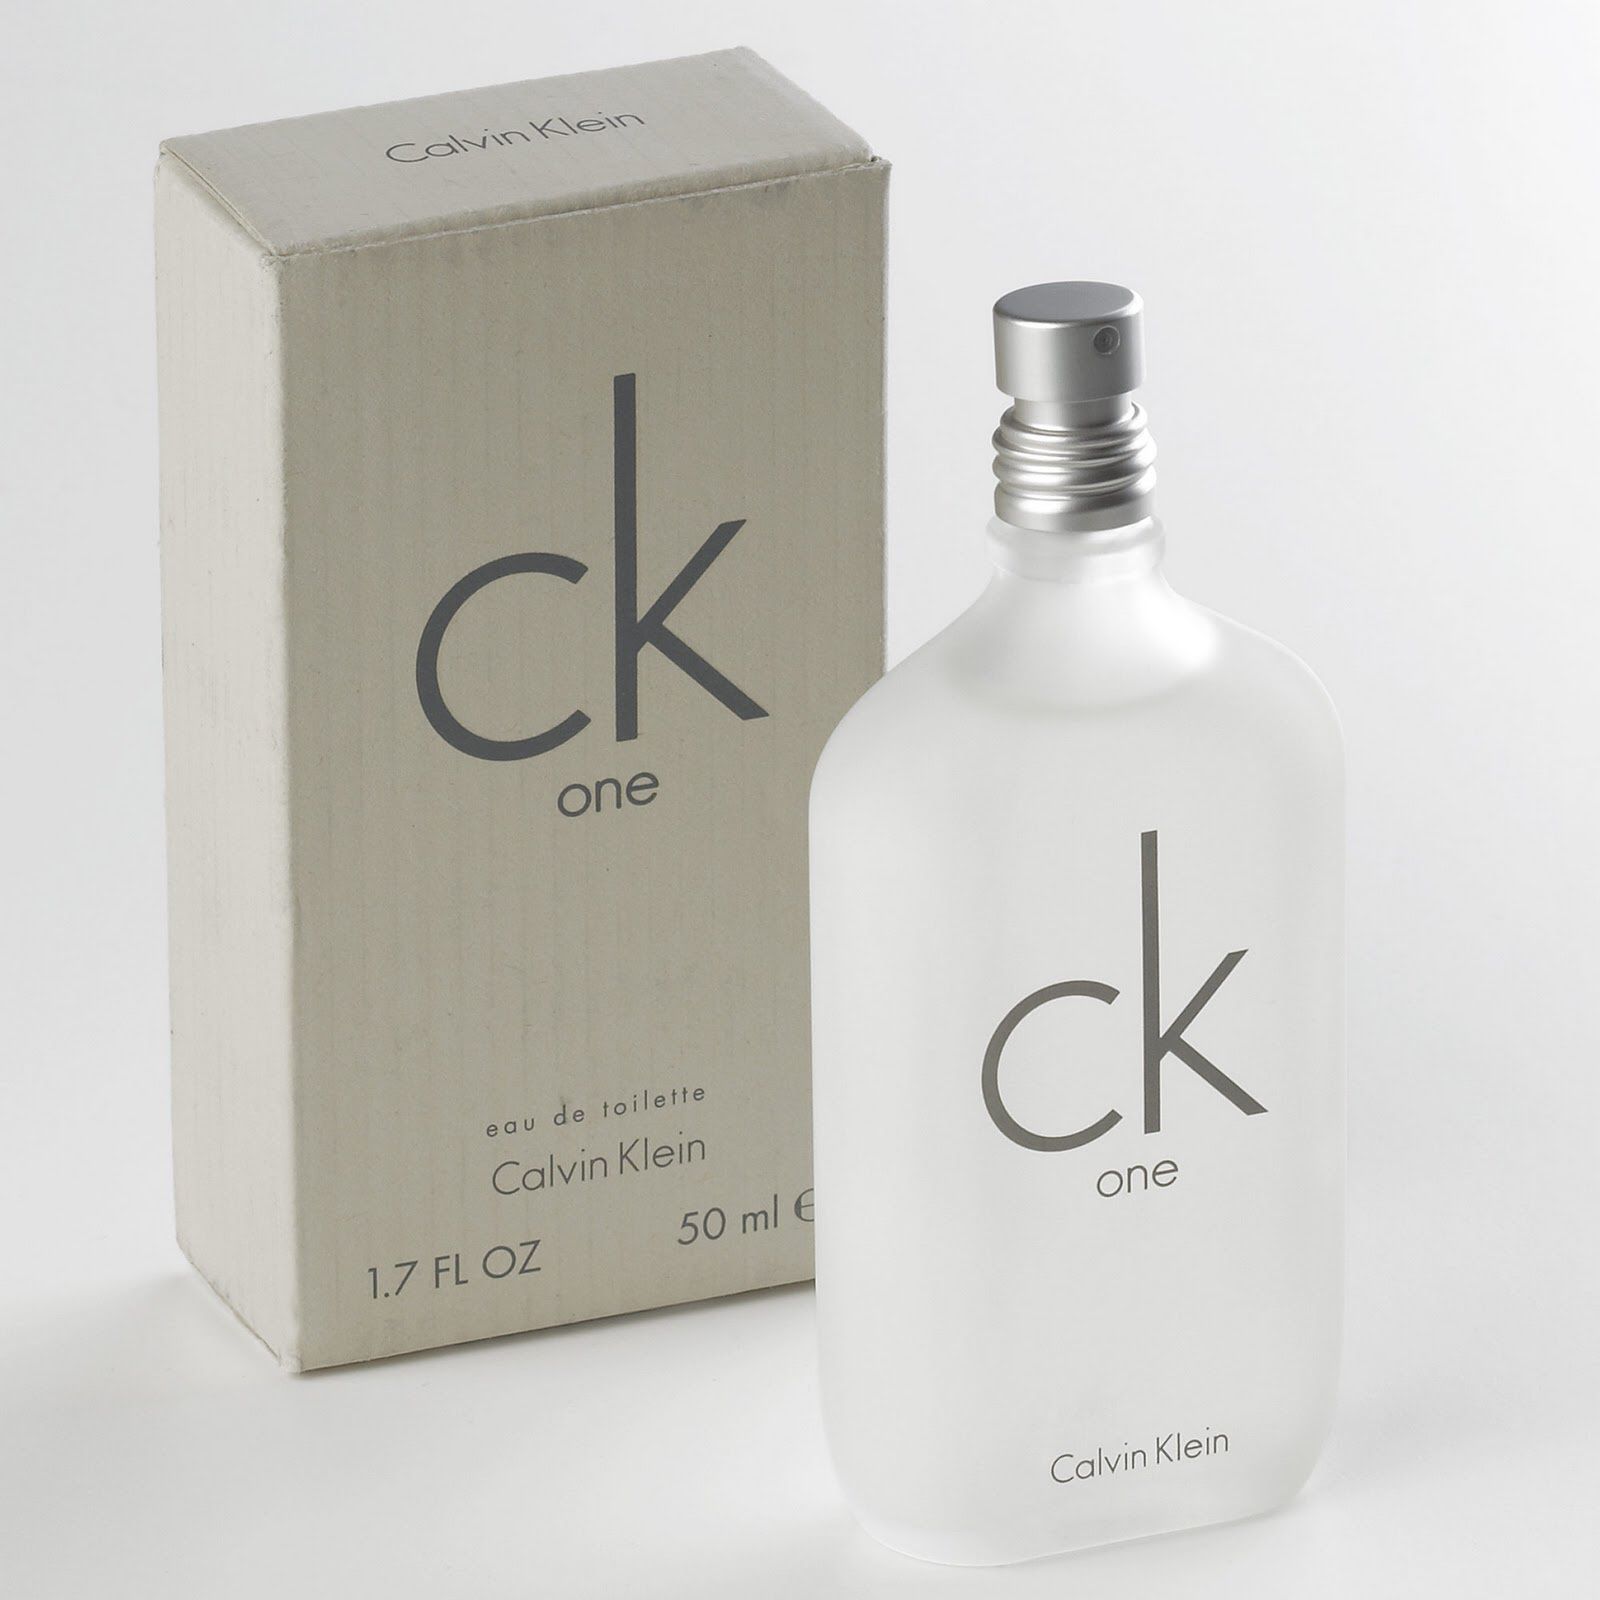 Calvin Klein's CK One (NEW 50 ml) 